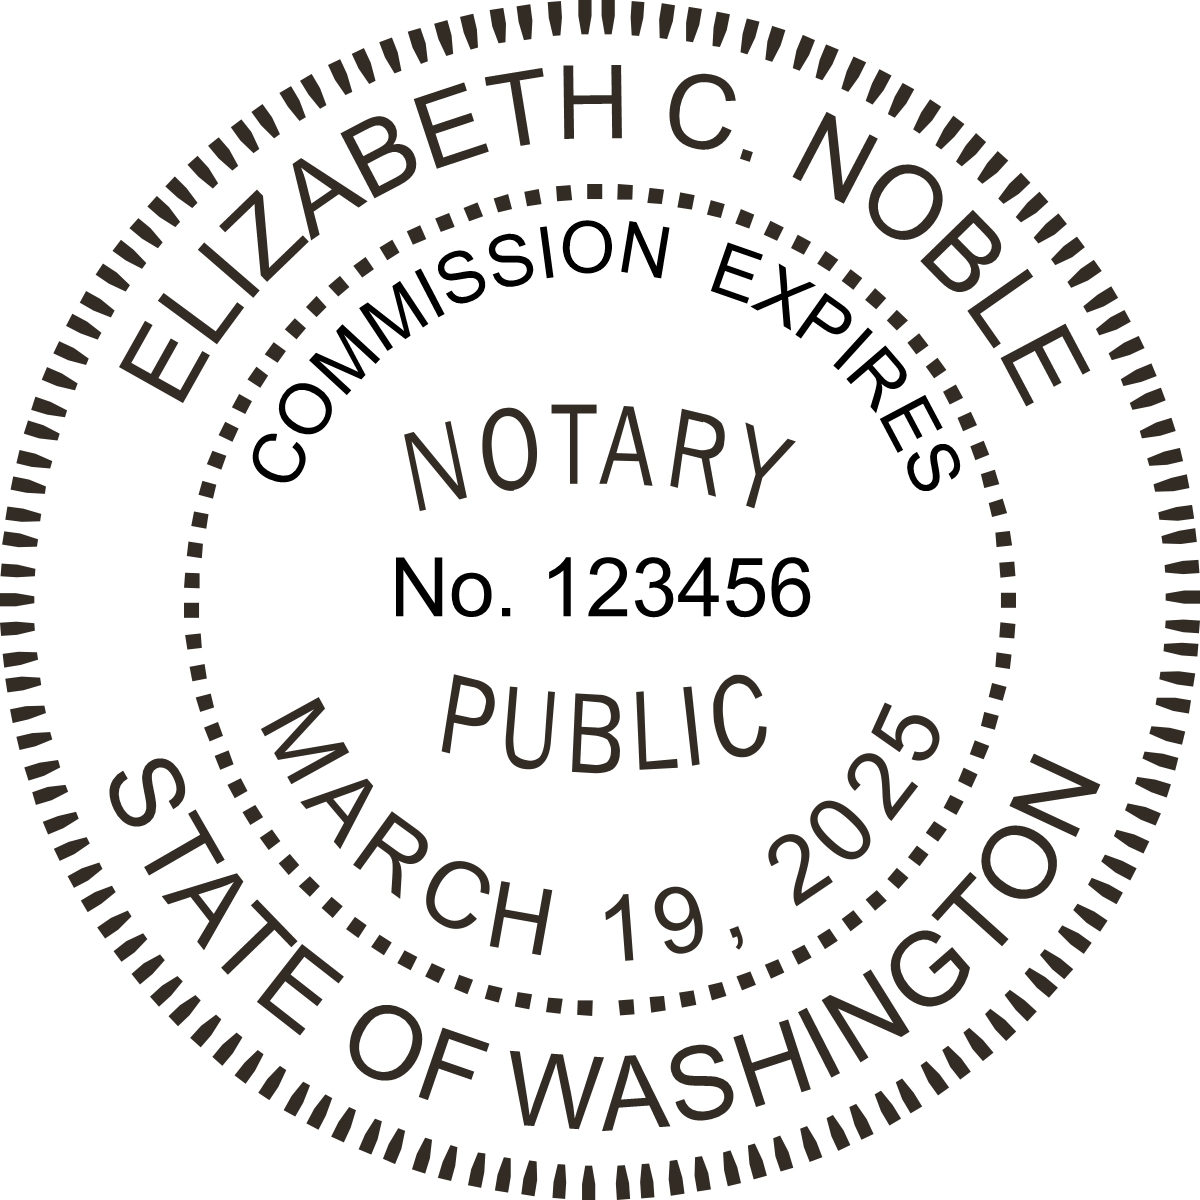 Notary Seal - Wood Stamp - Washington